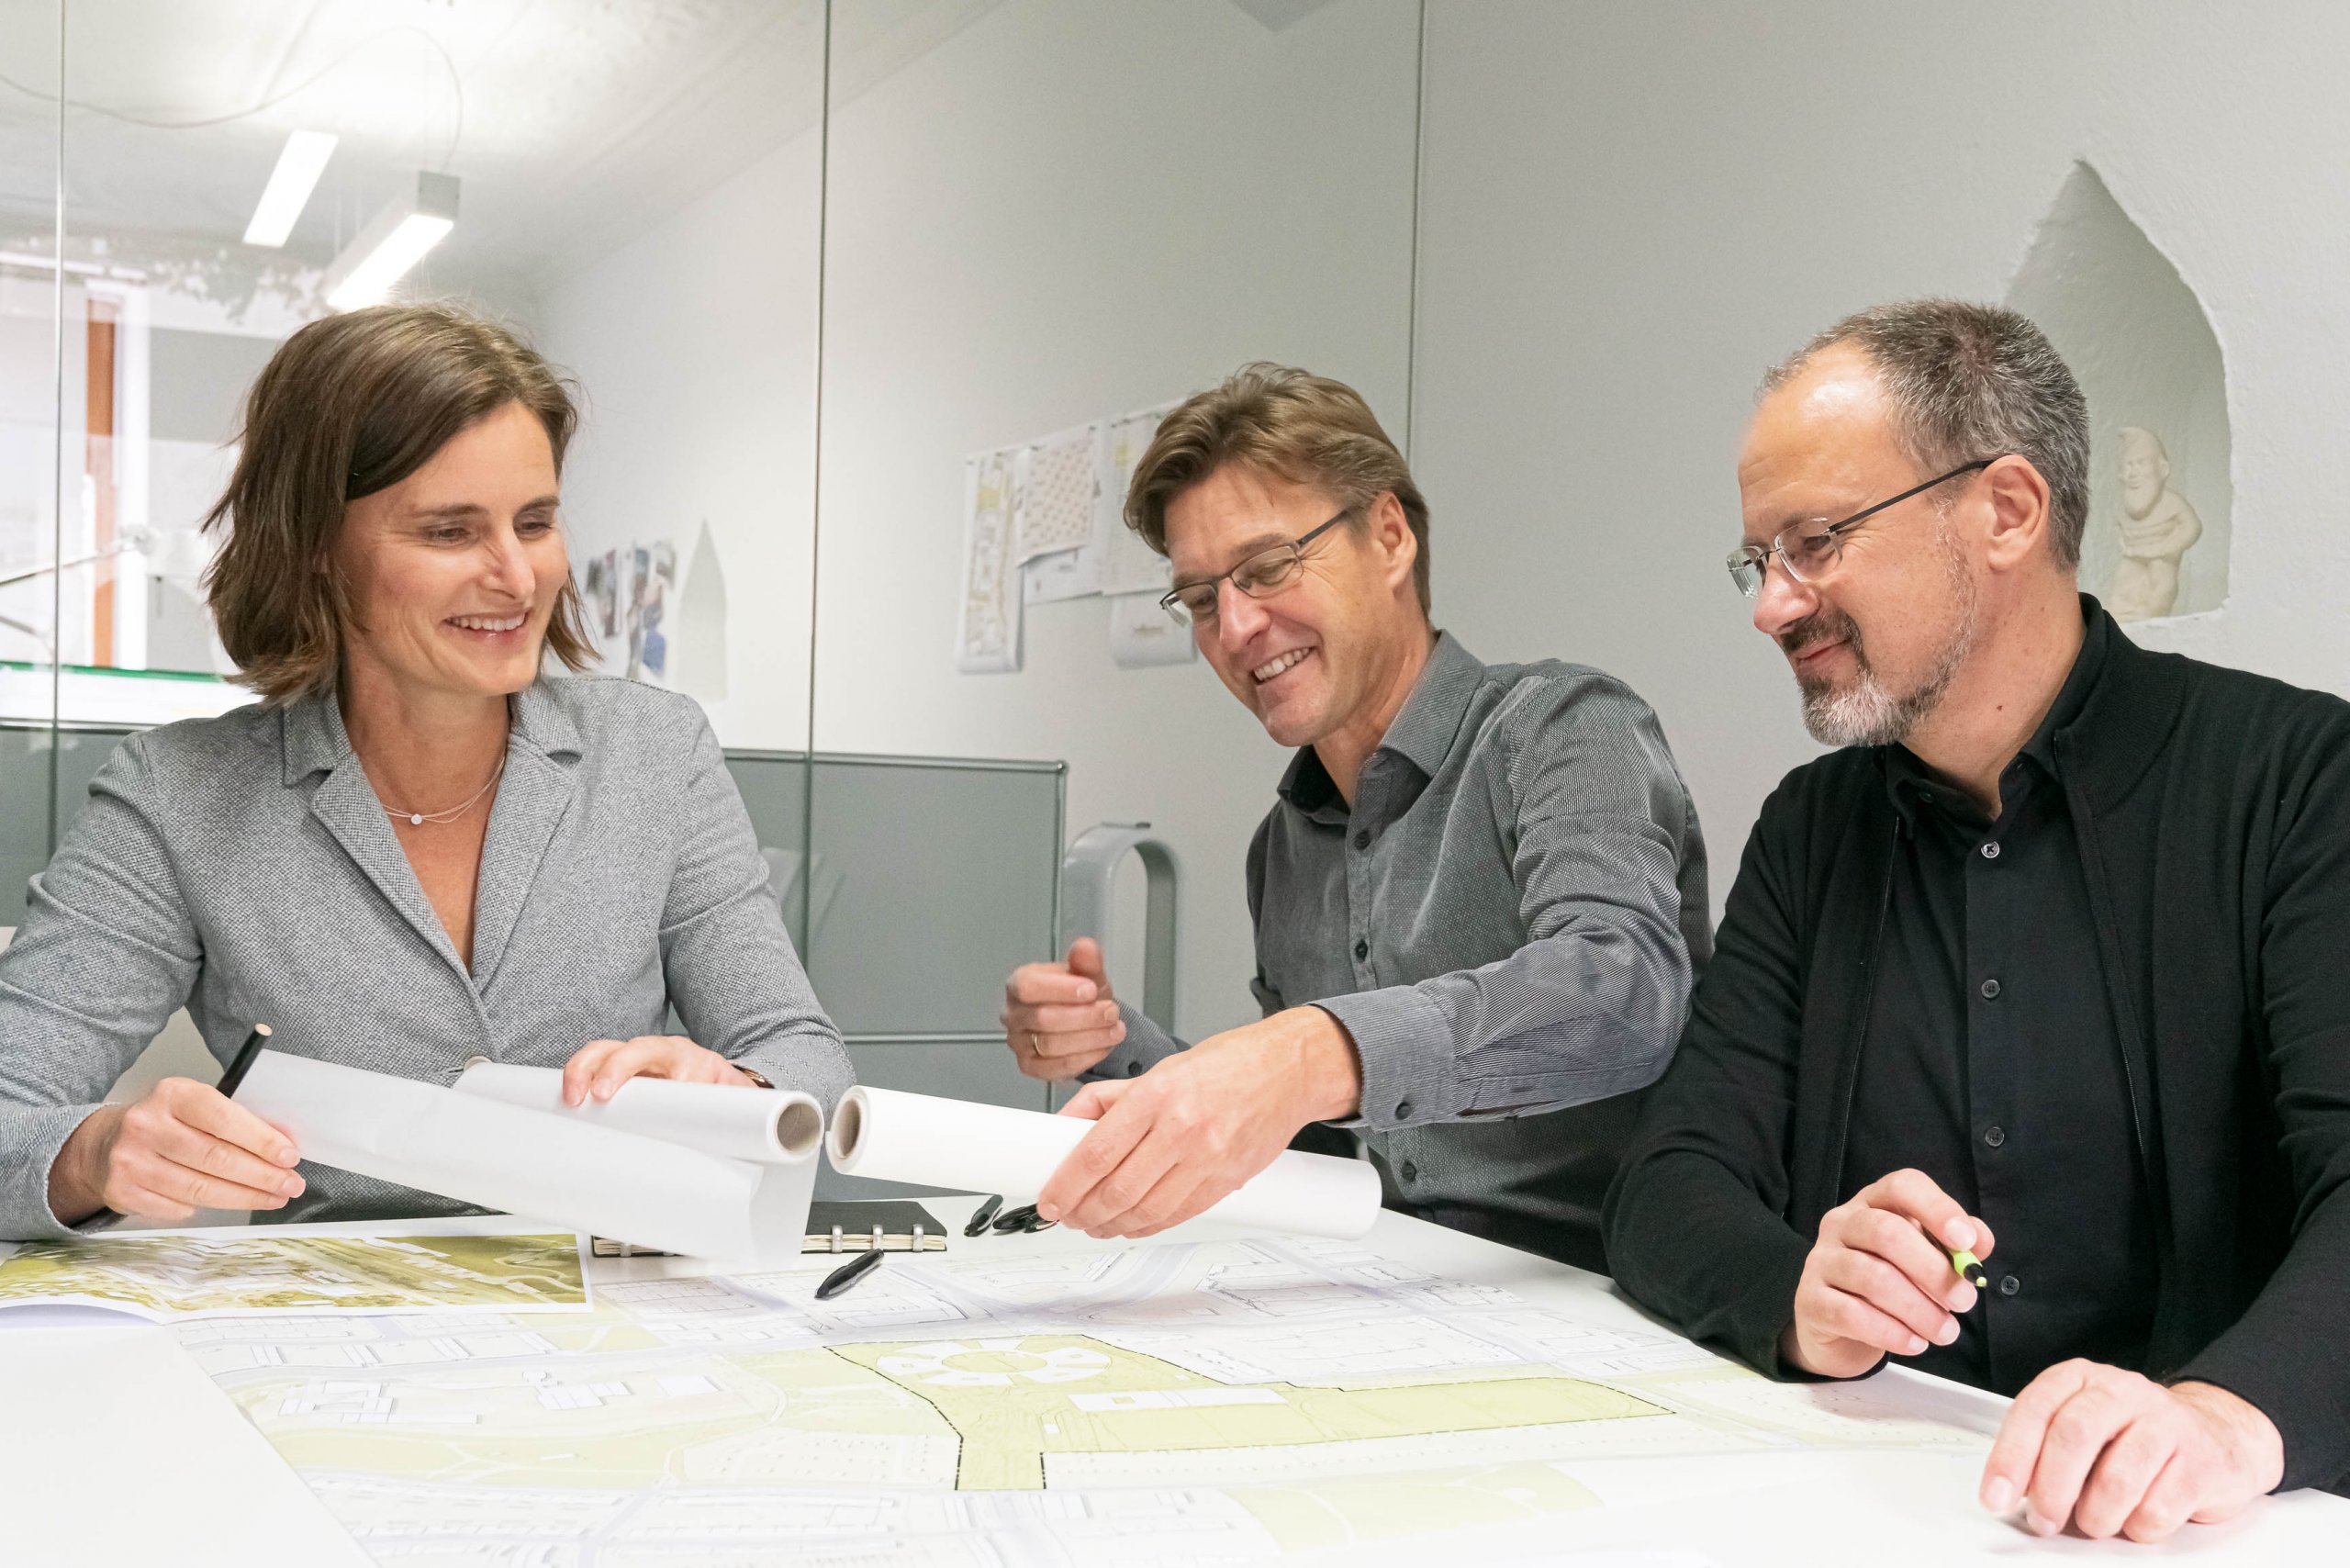 Bild: Die Geschäftsführer Prof. Dr. Birgit Kröniger, Jochen Rümpelein und Robert Wenk bei einer gemeinsamen Besprechung